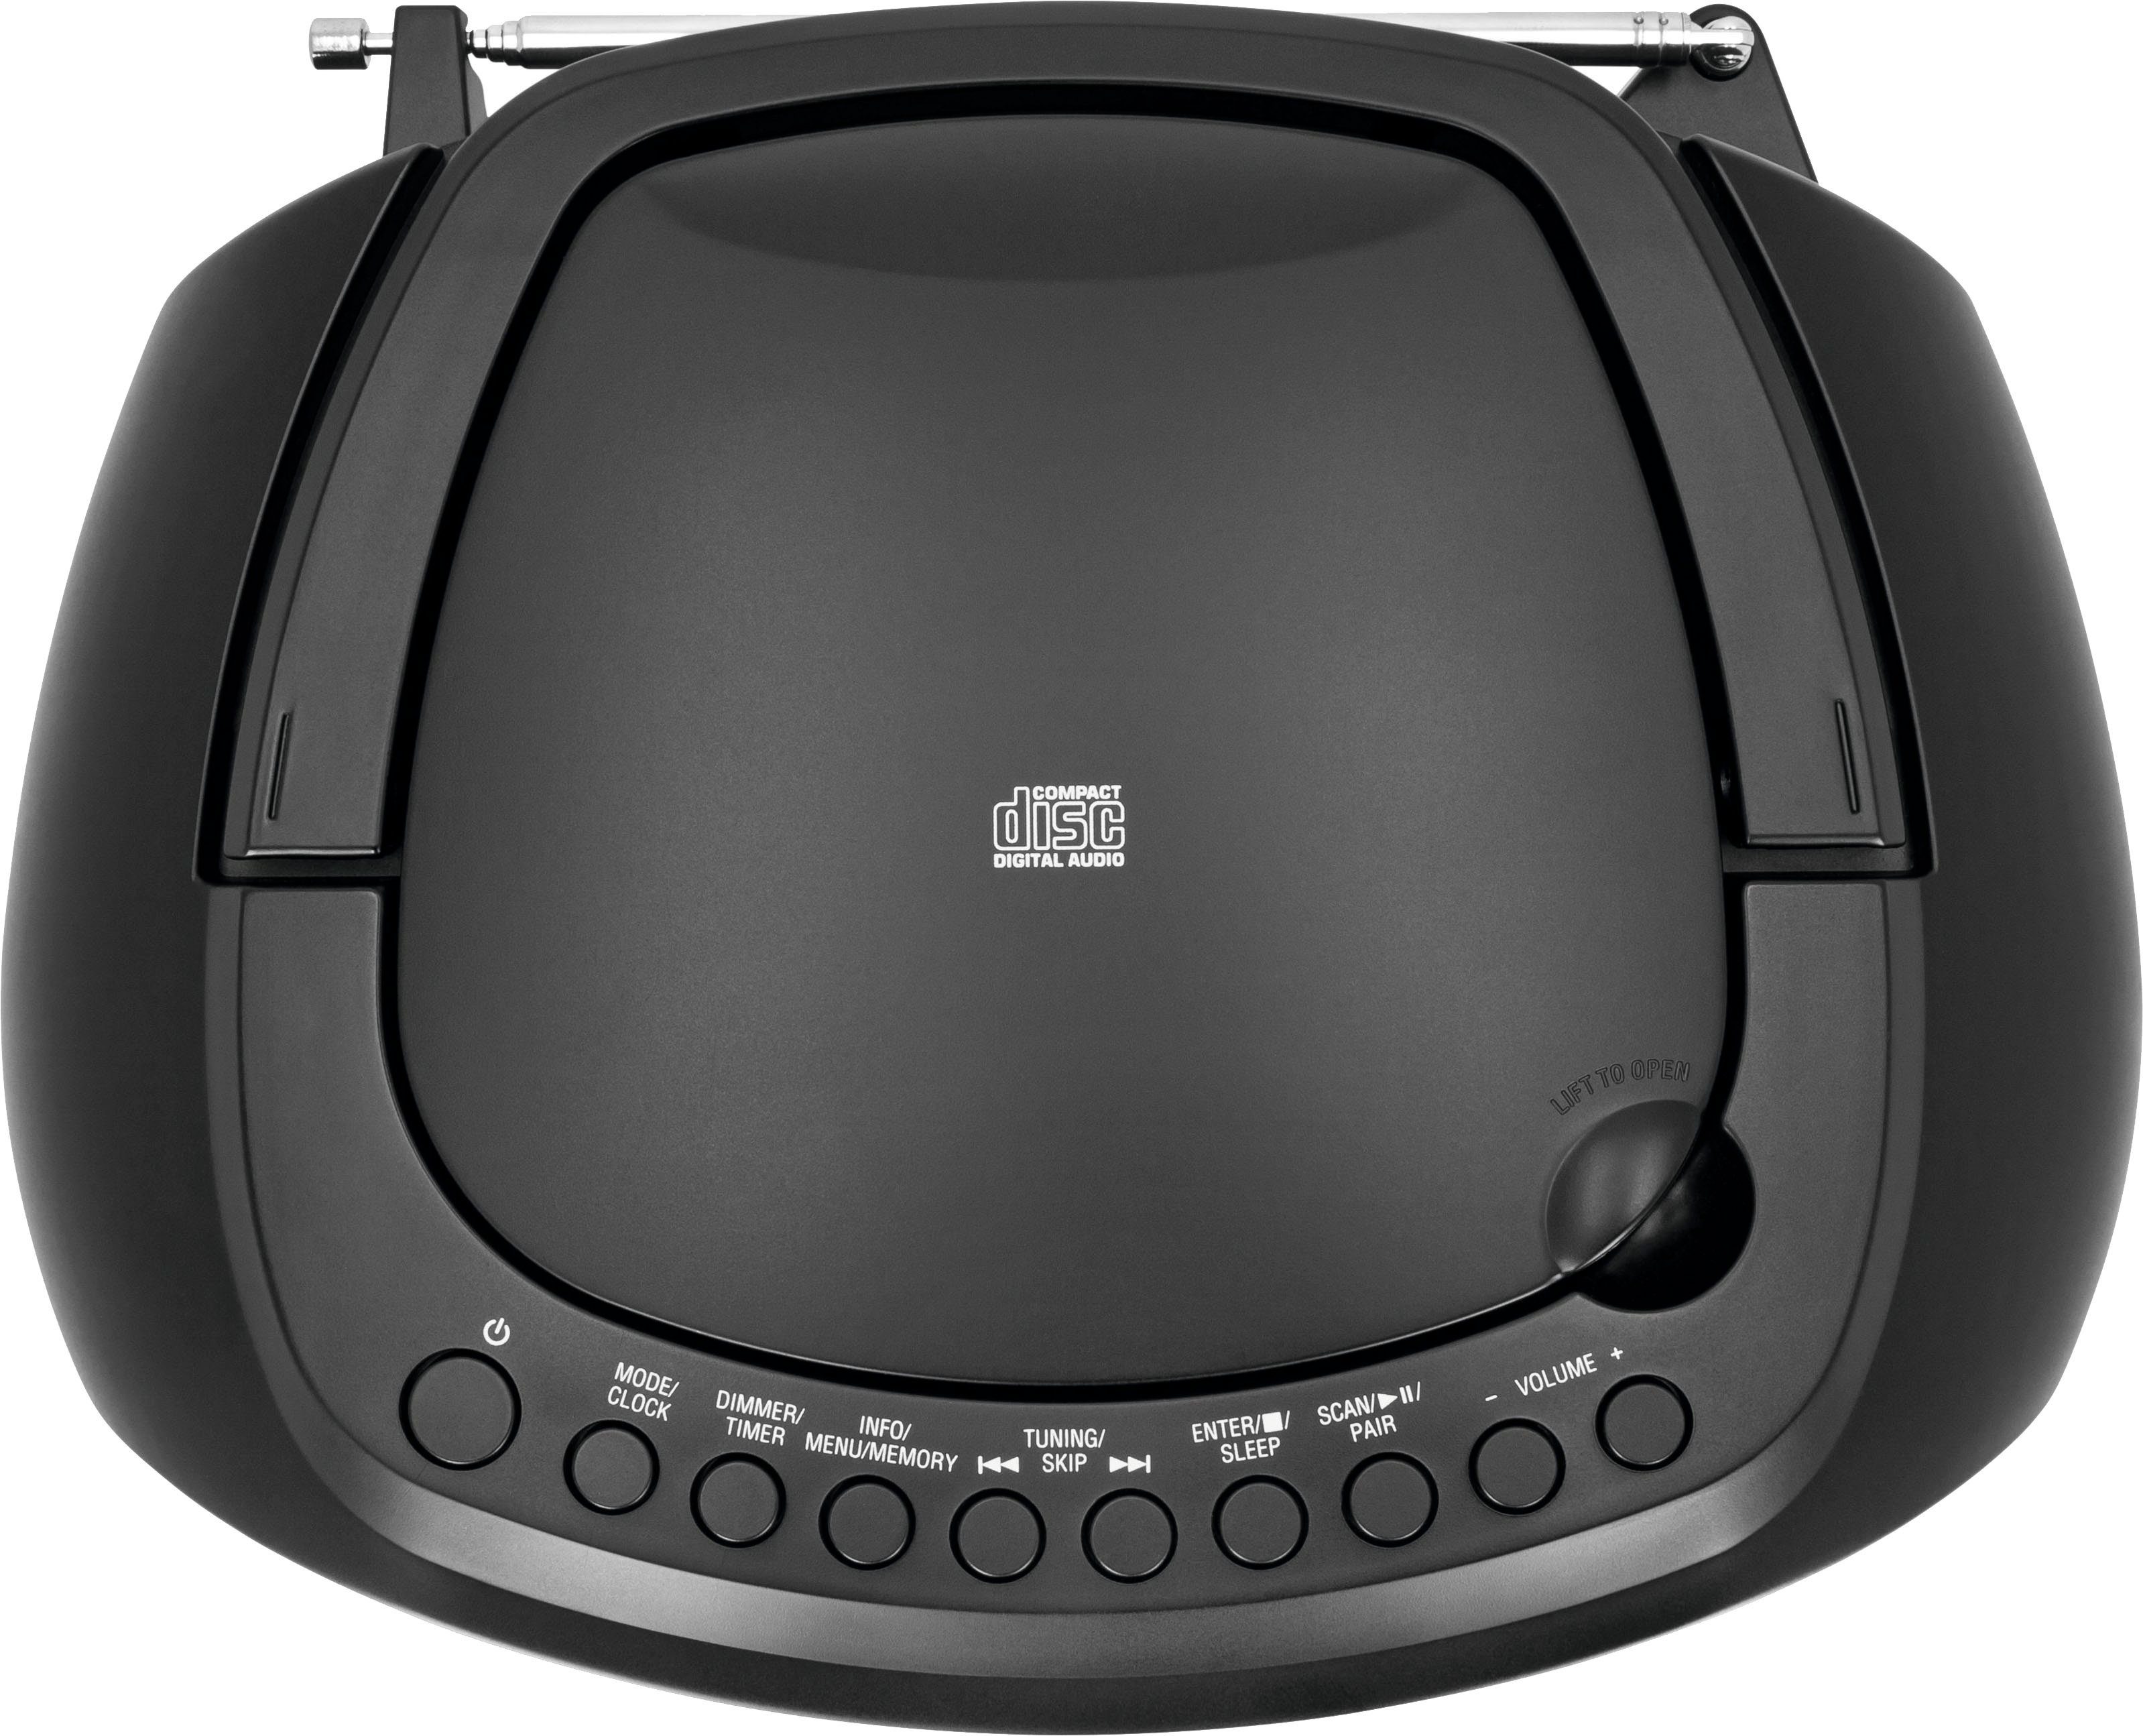 TechniSat schwarz Batteriebetrieb möglich) FM-Tuner, Digitradio Stereo- (Digitalradio UKW, mit Bluetooth, Boombox (DAB), CD-Player, USB, 1990 DAB+,